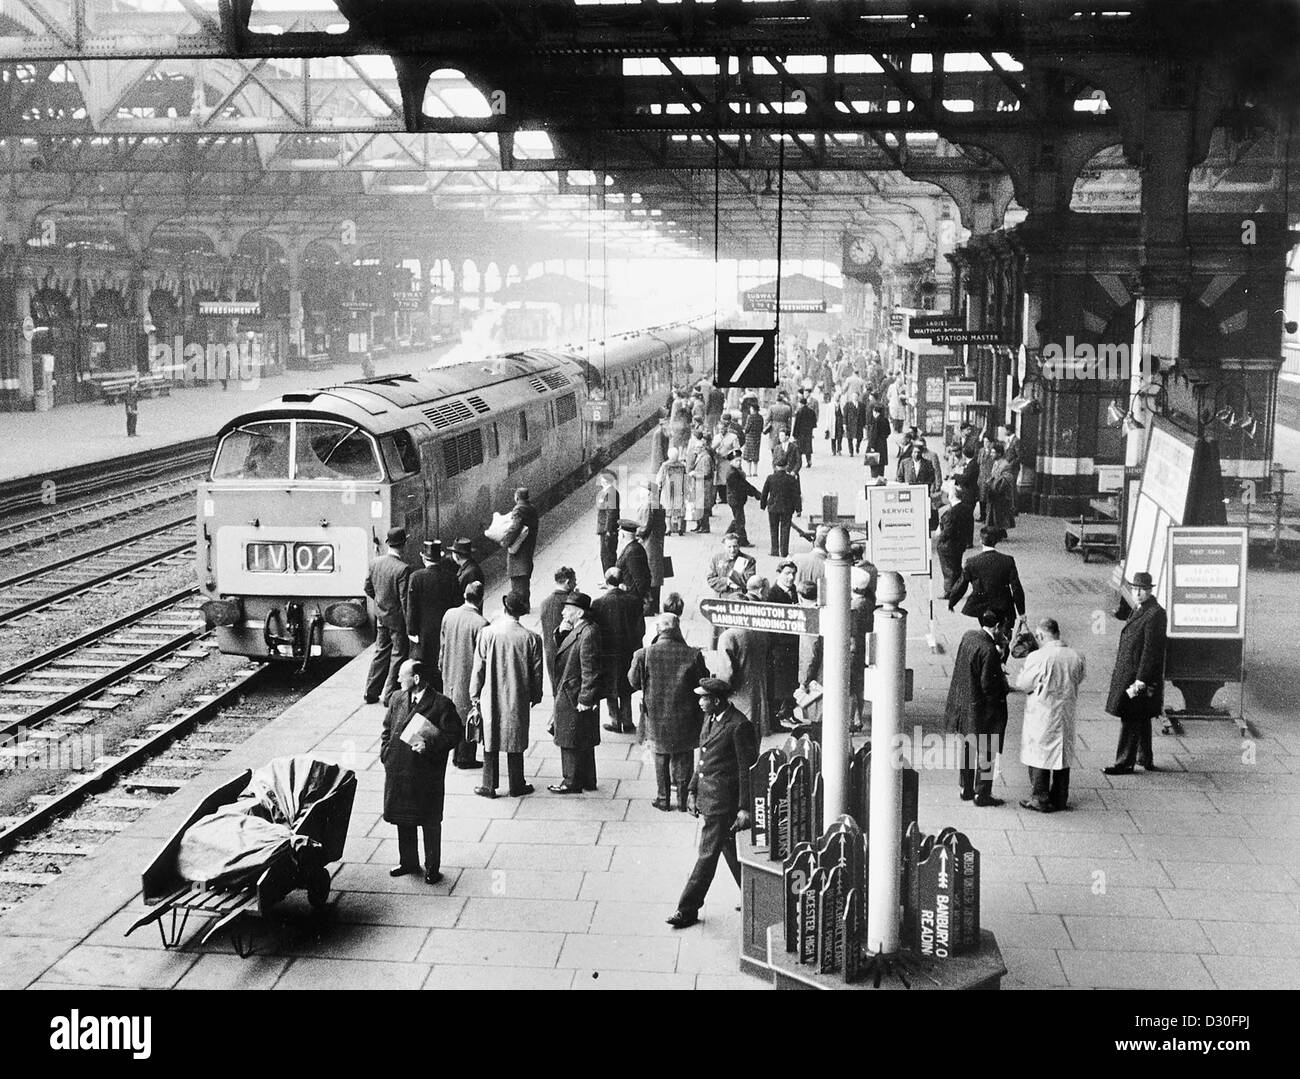 Bahnhof Birmingham Snow Hill 1967. Großbritannien Bahnhofsplattform des Vereinigten Königreichs stark frequentierten Passagiere die British 60s Railways Stockfoto